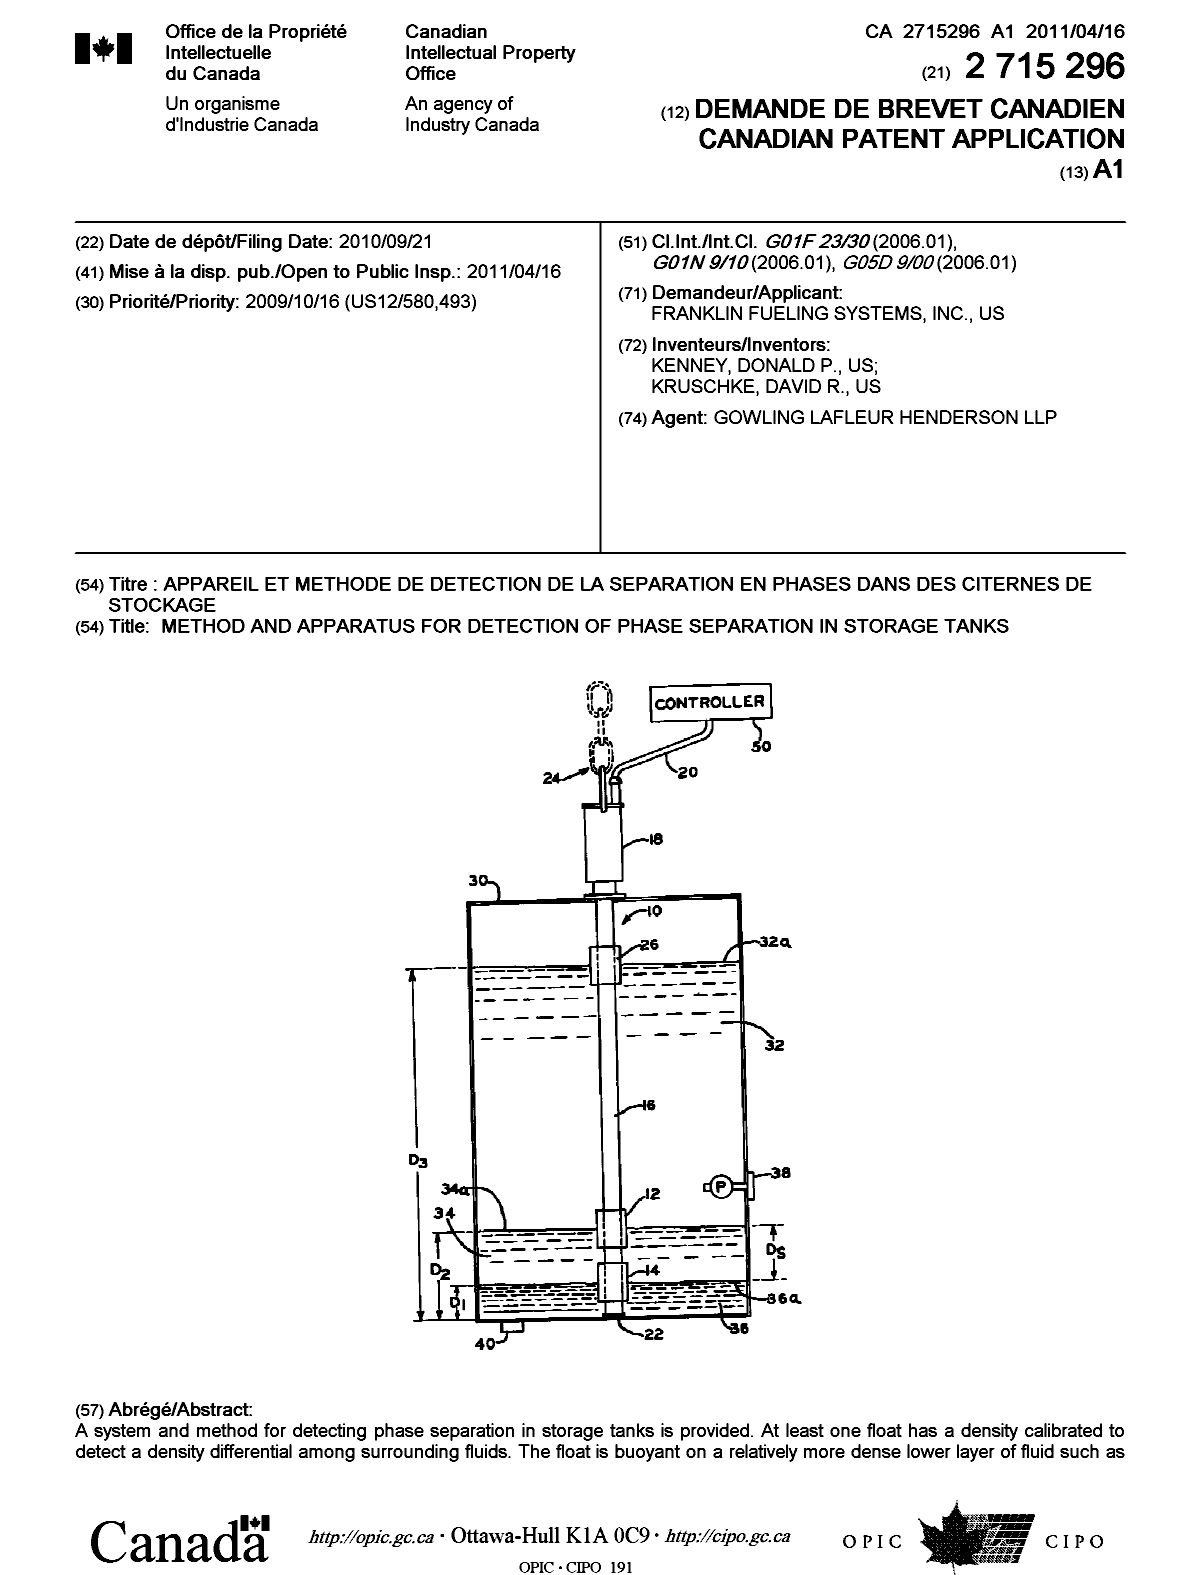 Document de brevet canadien 2715296. Page couverture 20110325. Image 1 de 2